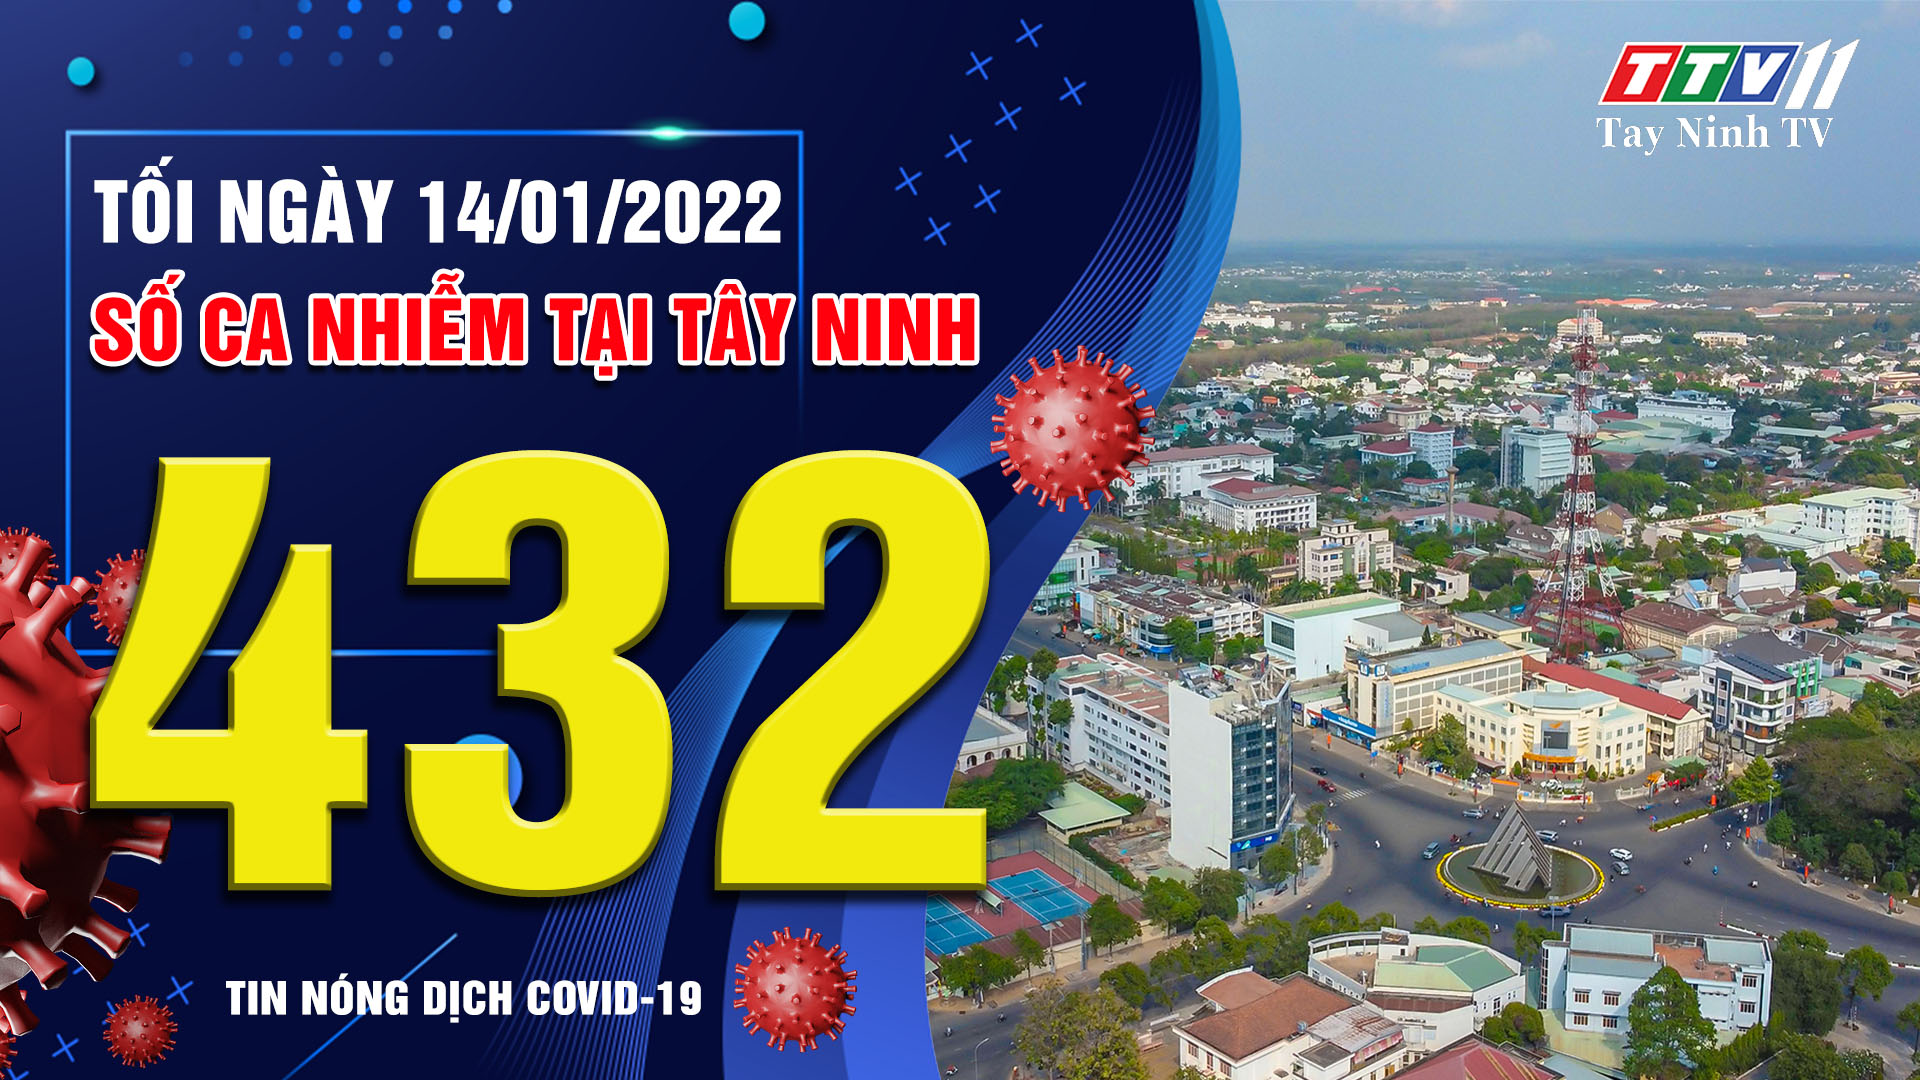 TIN TỨC COVID-19 TỐI 14/01/2022 | Tin tức hôm nay | TayNinhTV